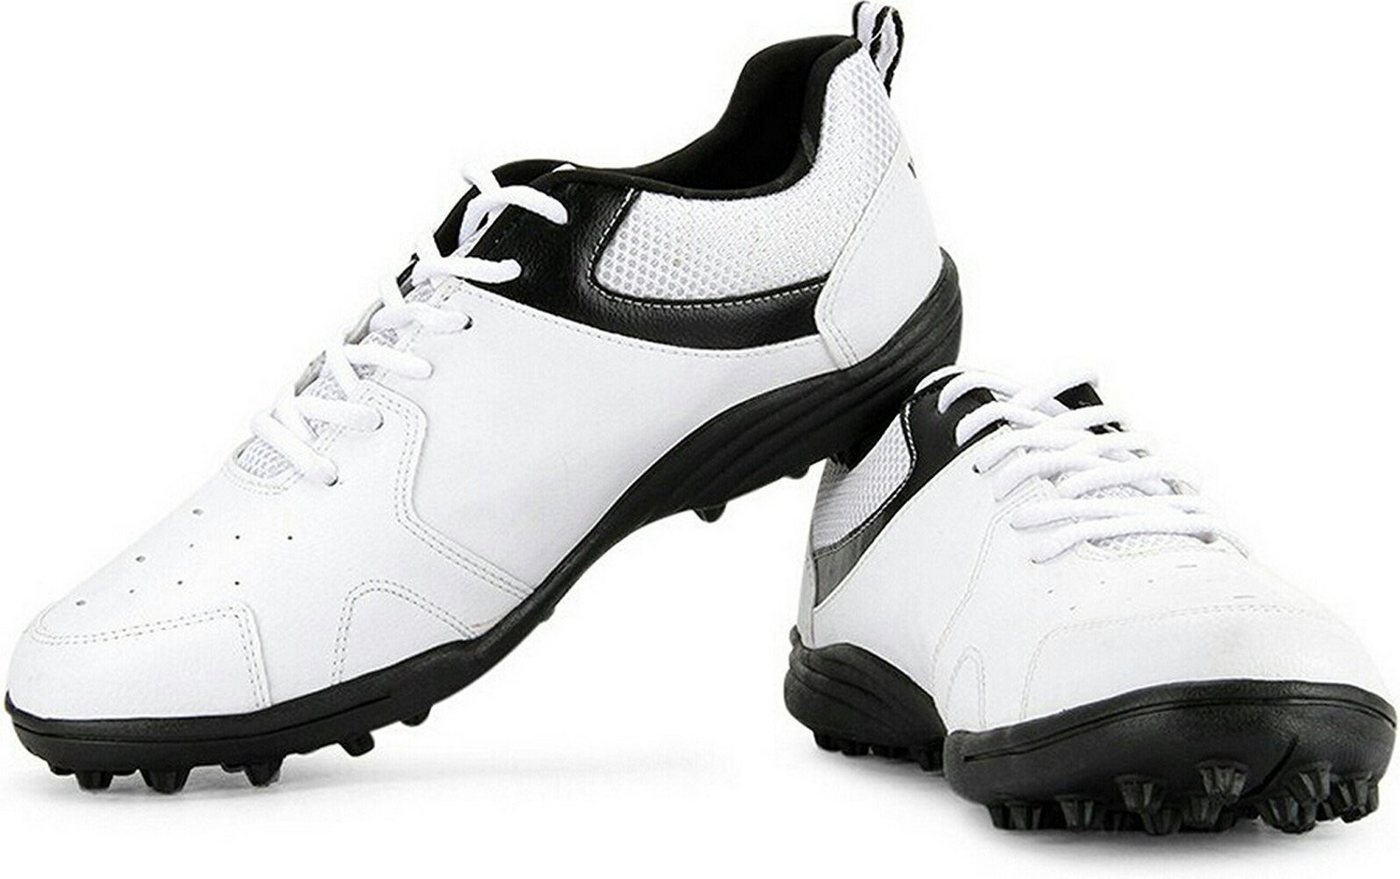 Vector X Blast Cricket-Schuhe for Men & Boys Sneaker (Packungsinhalt: 1 Paar Schuhe, Gefertigt aus hochwertigem Kunstleder, Gummisohle) Increase your training load, Erholen Sie sich schneller von Vector X